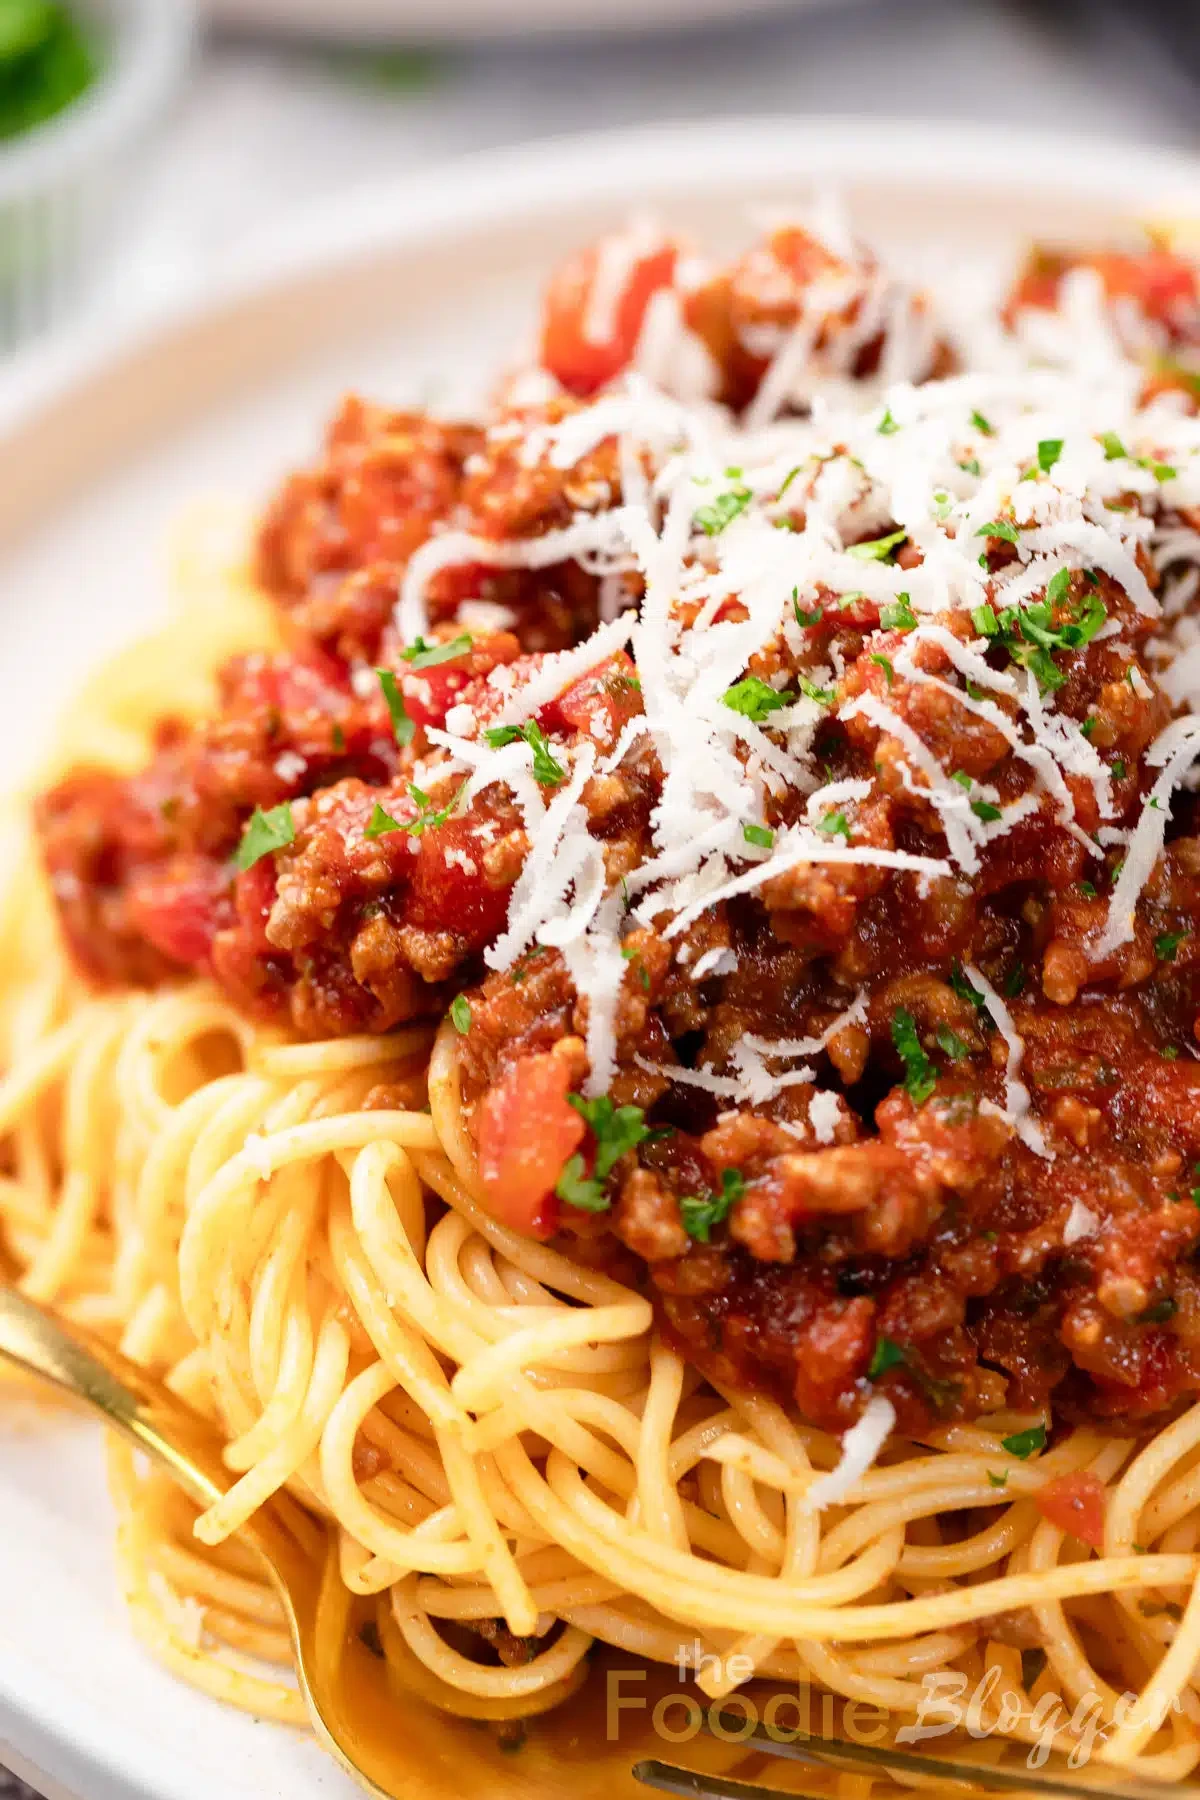 22. Quick Spaghetti Bolognese